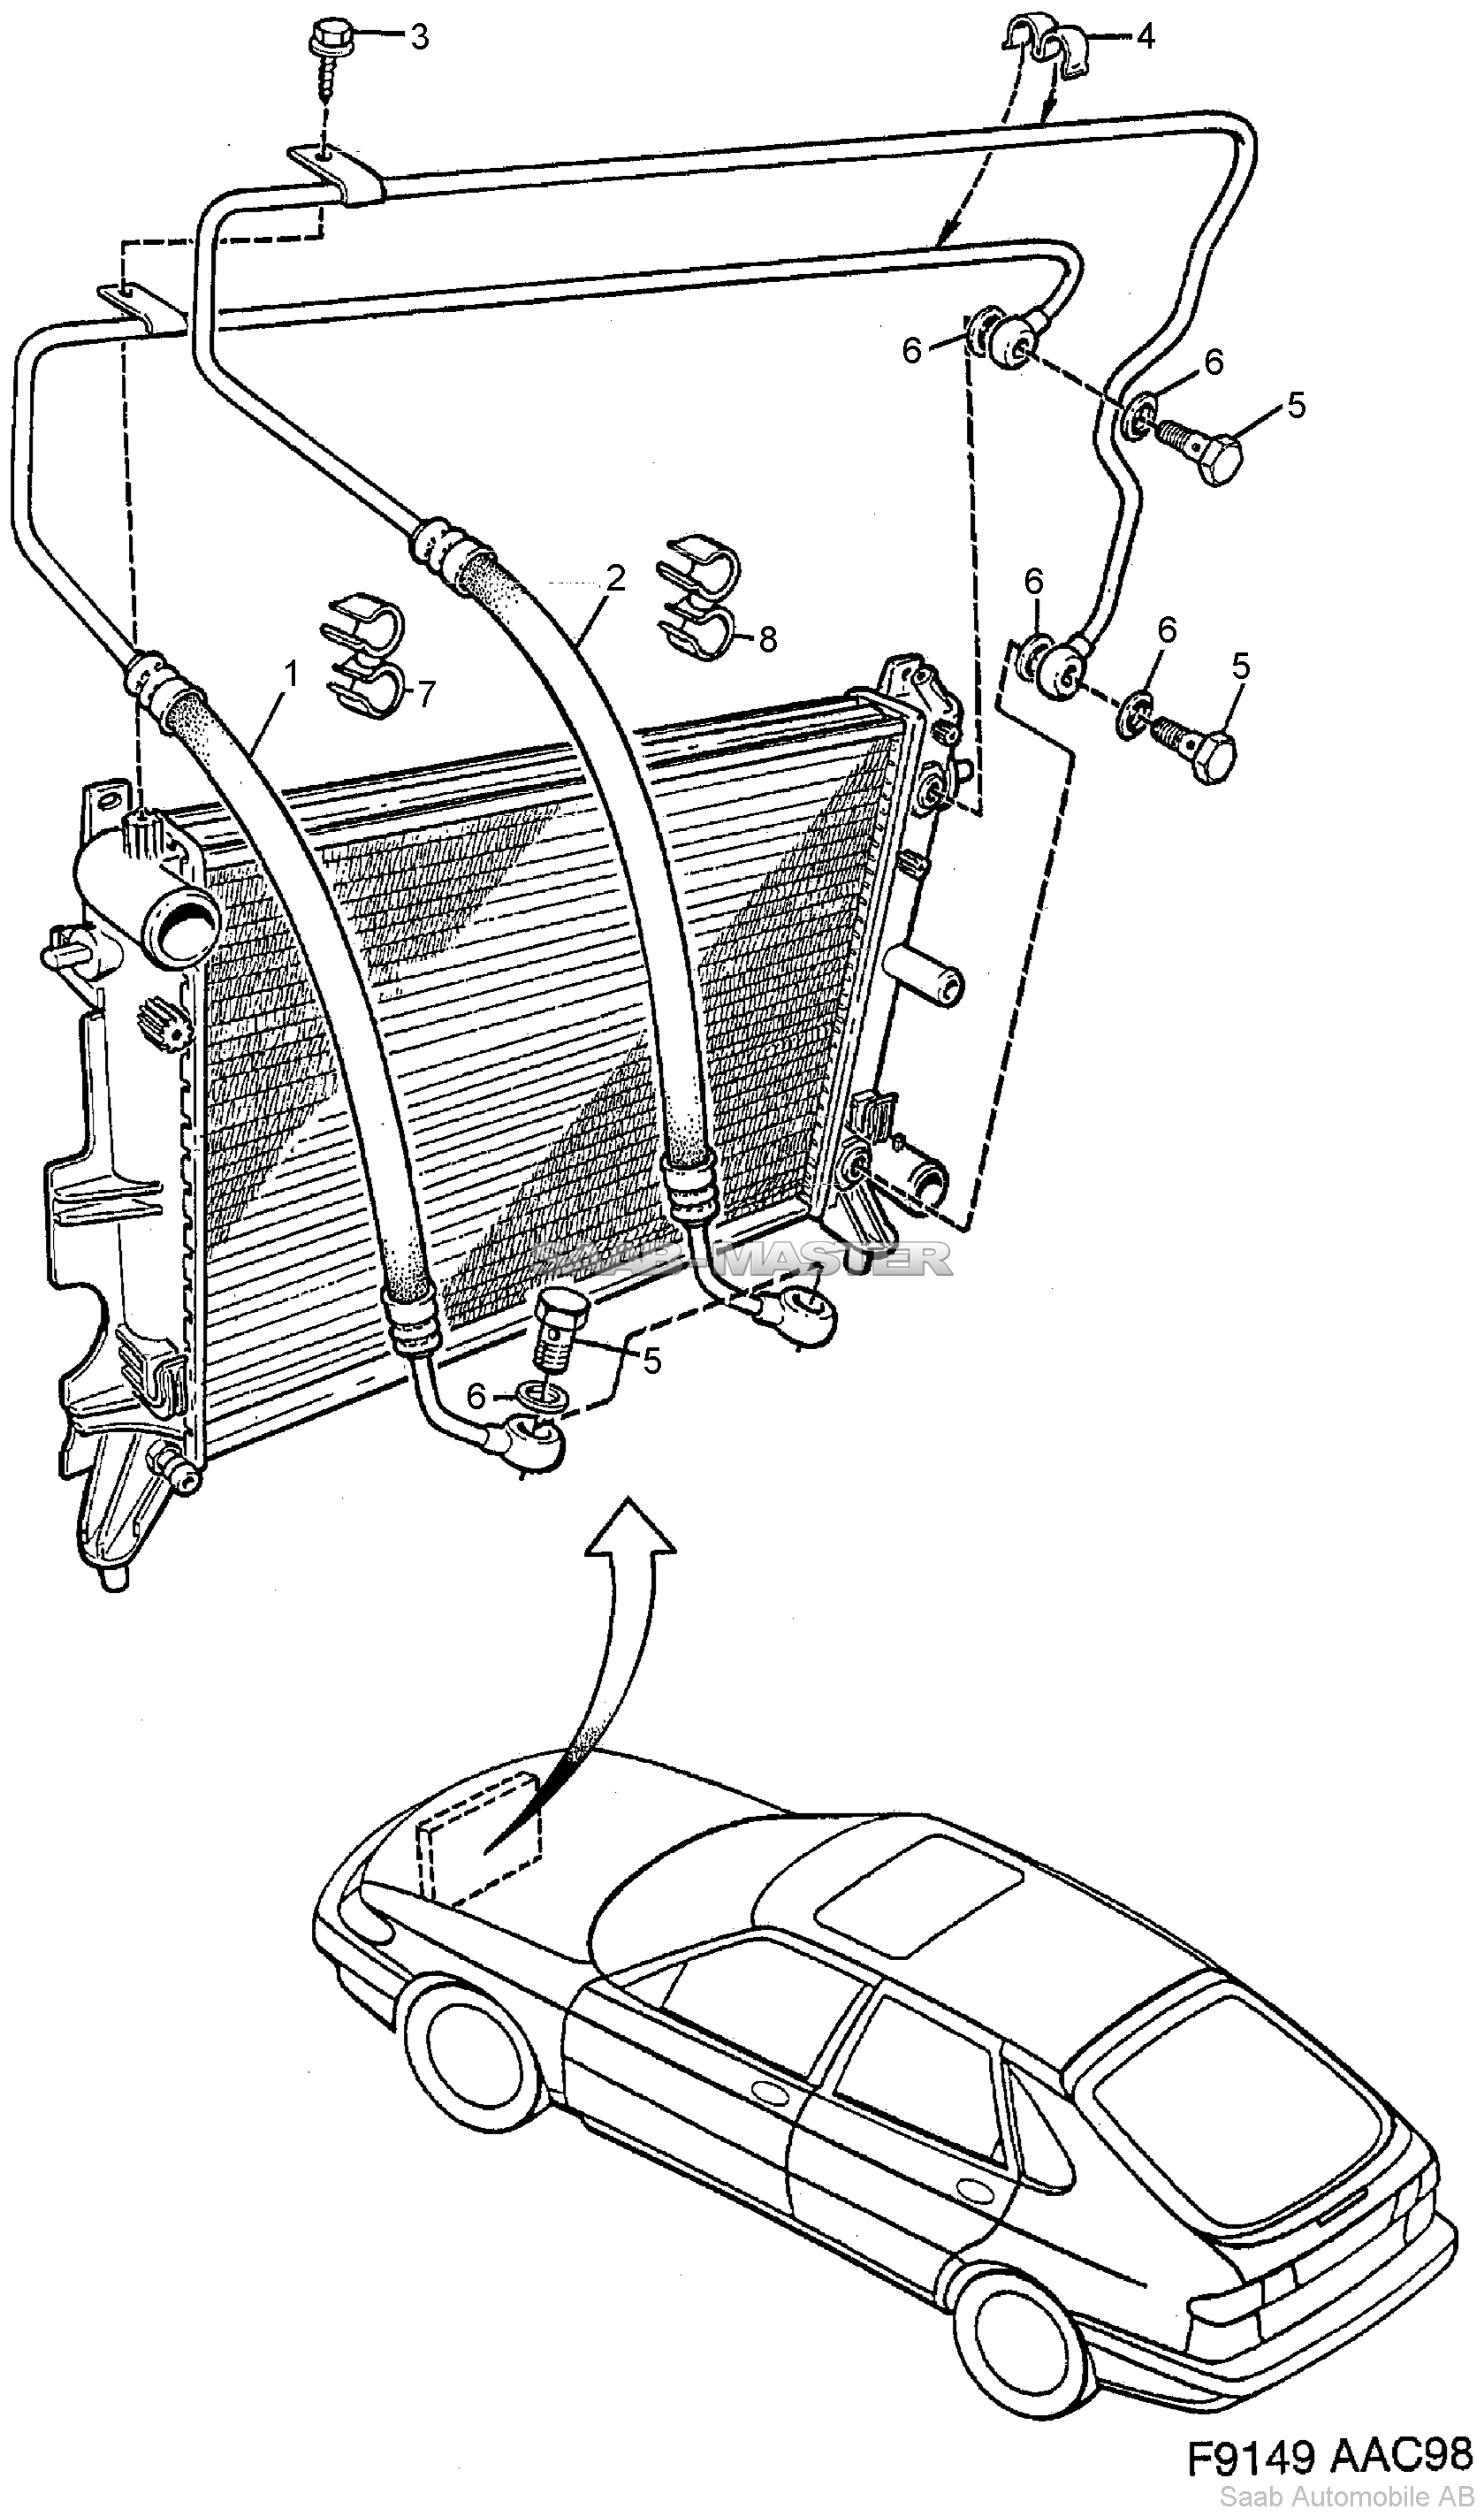 Воздушный охладитель масла - Автоматическая коробка передач